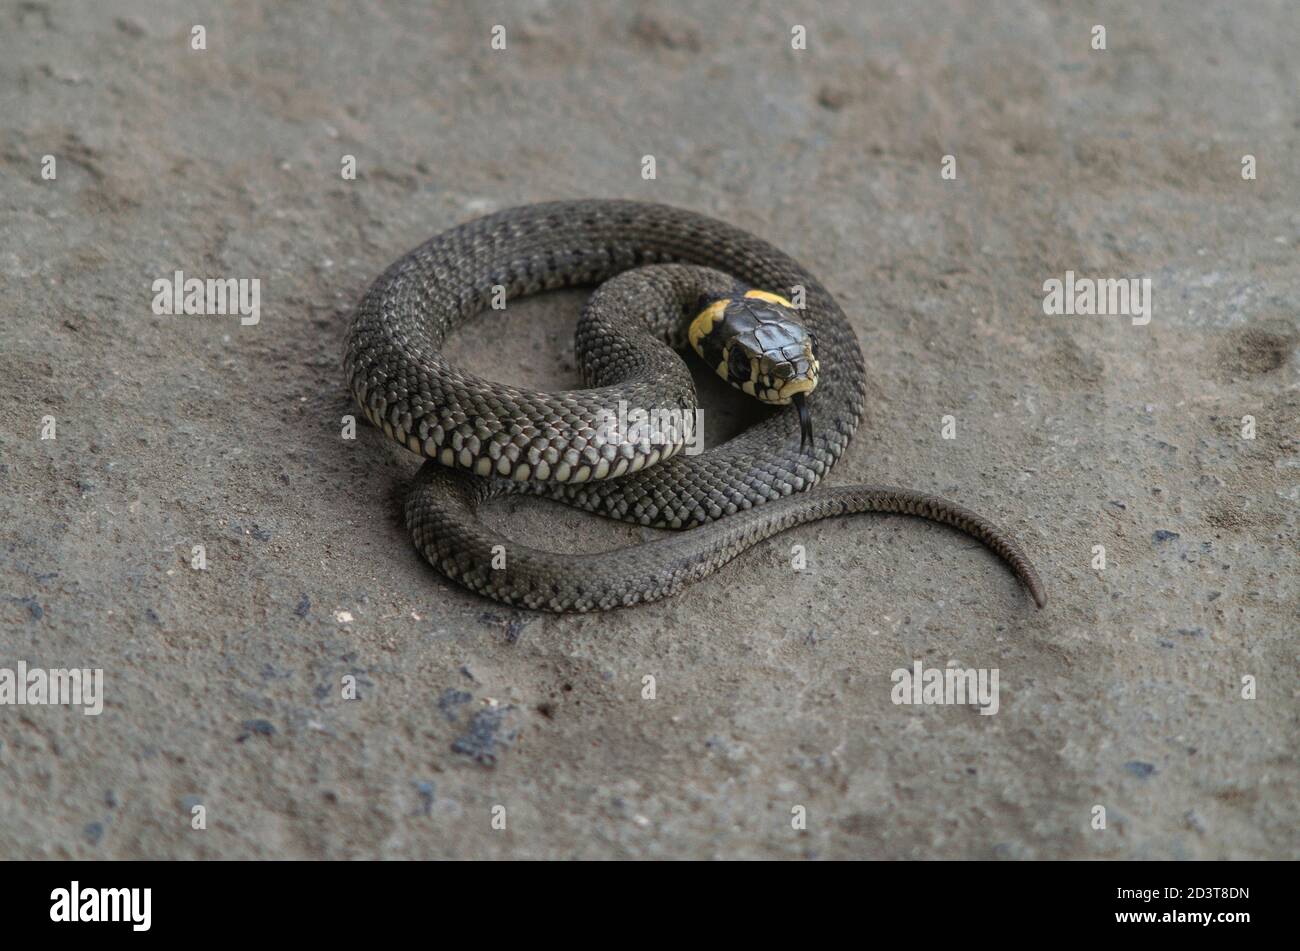 Serpente d'erba, serpente giovane arricciato su una pietra - Natrix natrix, serpente ad anello o serpente d'acqua - percorso di lavoro isolato Foto Stock